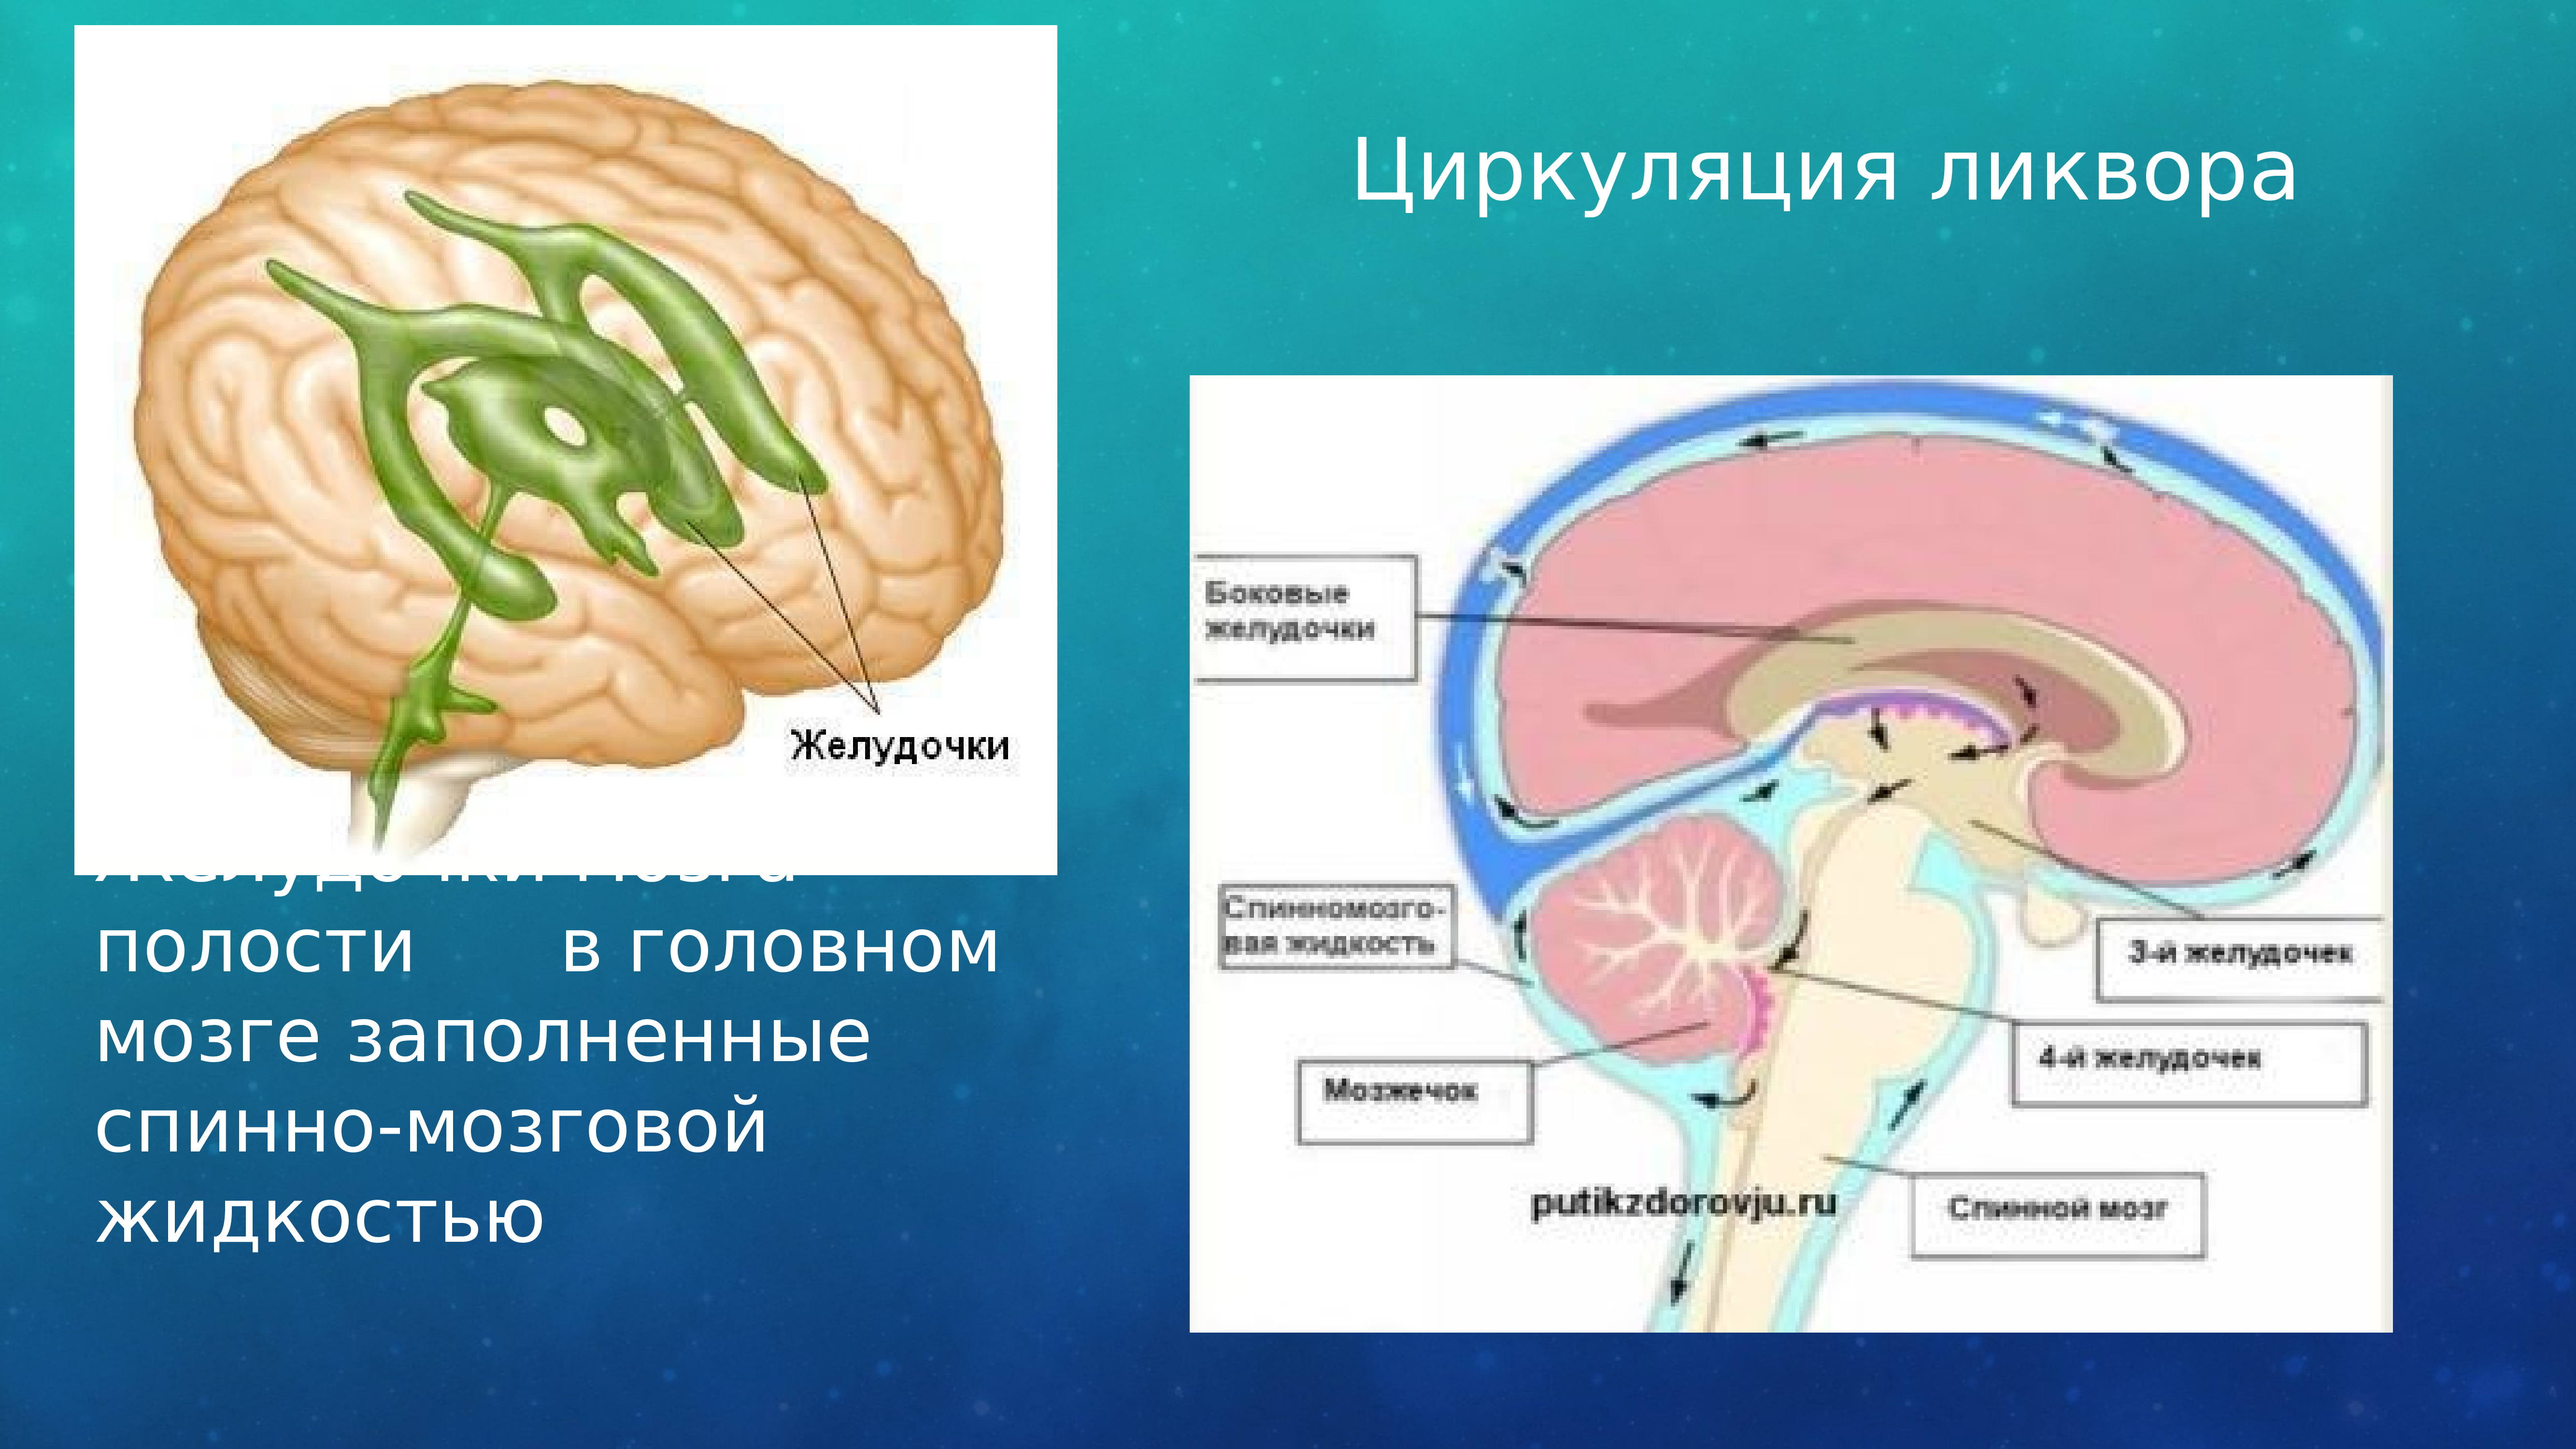 Полости мозга заполнены. Циркуляция ликвора в головном мозге. Ликвор в желудочках мозга. Циркуляция спинномозговой жидкости в головном мозге. Желудочки мозга и циркуляция спинномозговой жидкости.